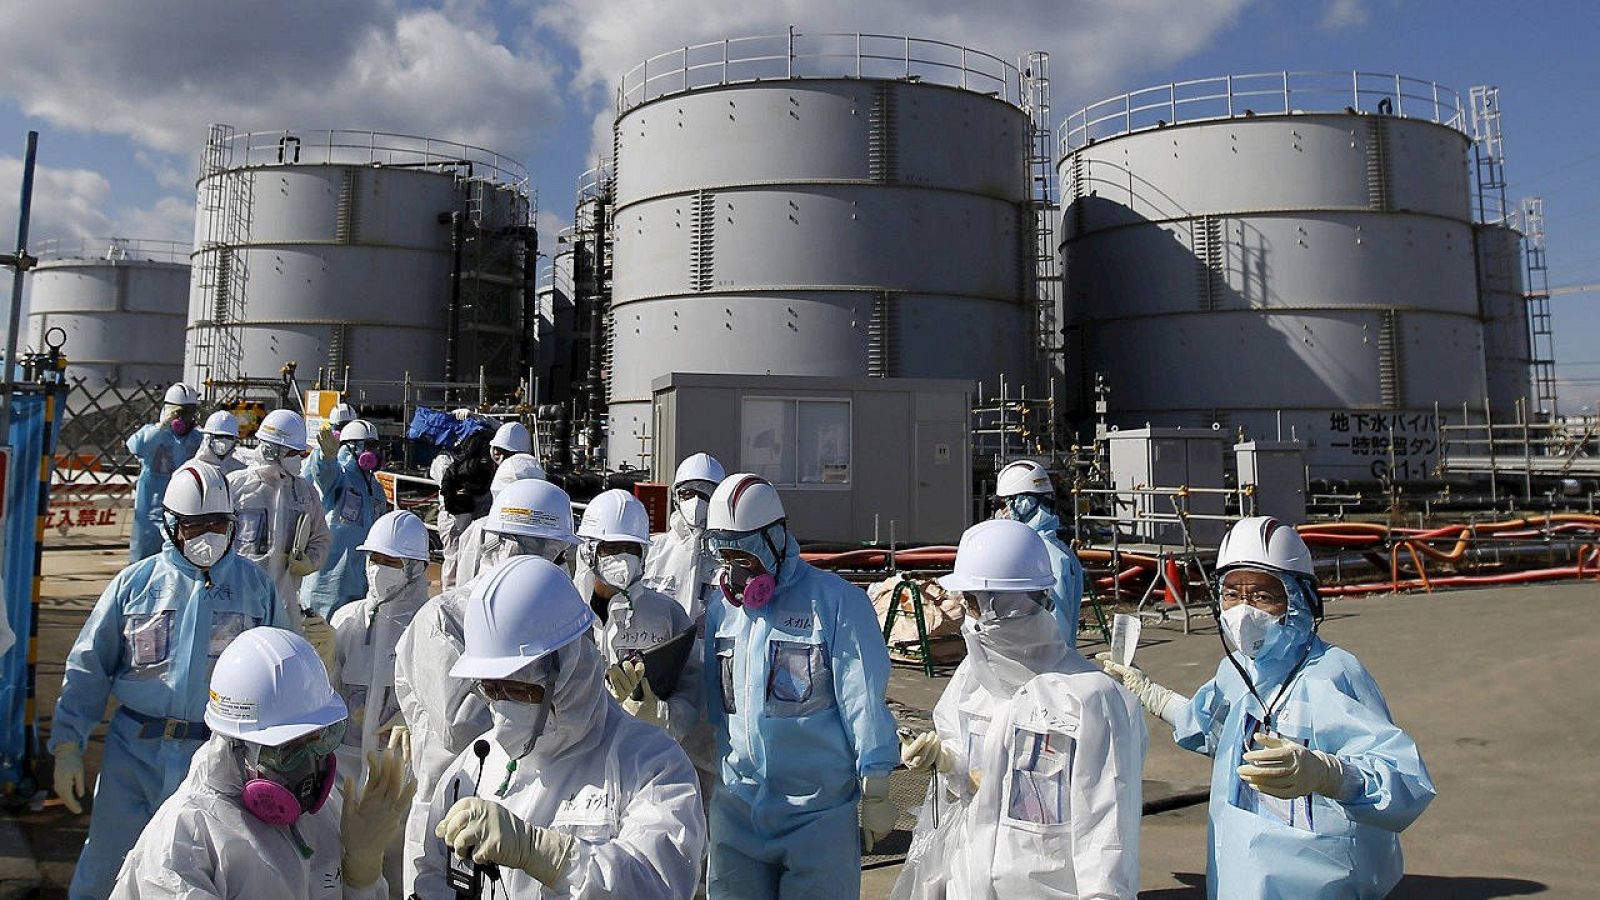 Periodistas protegidos por trajes anti-radiación visitan la central de Fukushima, en Japón, el 10 de febrero de 2016. REUTERS/Toru Hanai